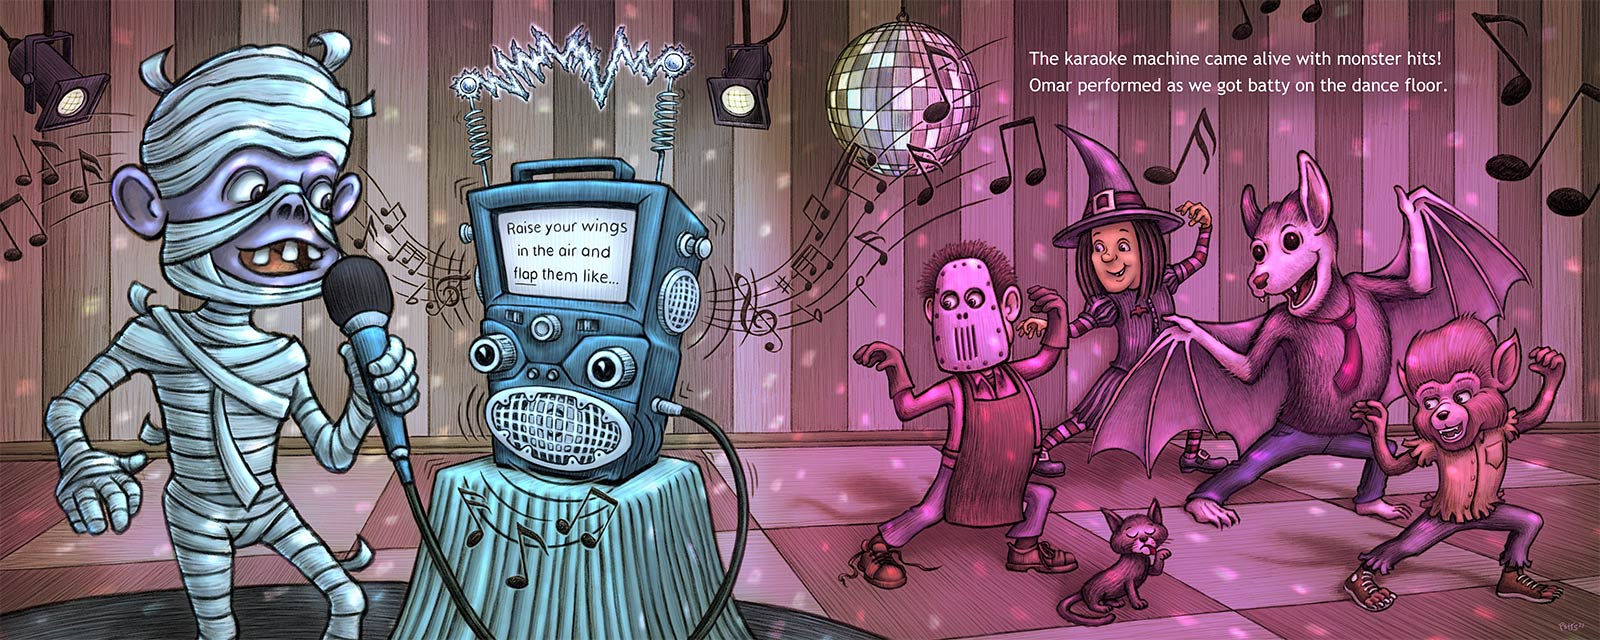 Monster Karaoke | Gary Potts Illustration